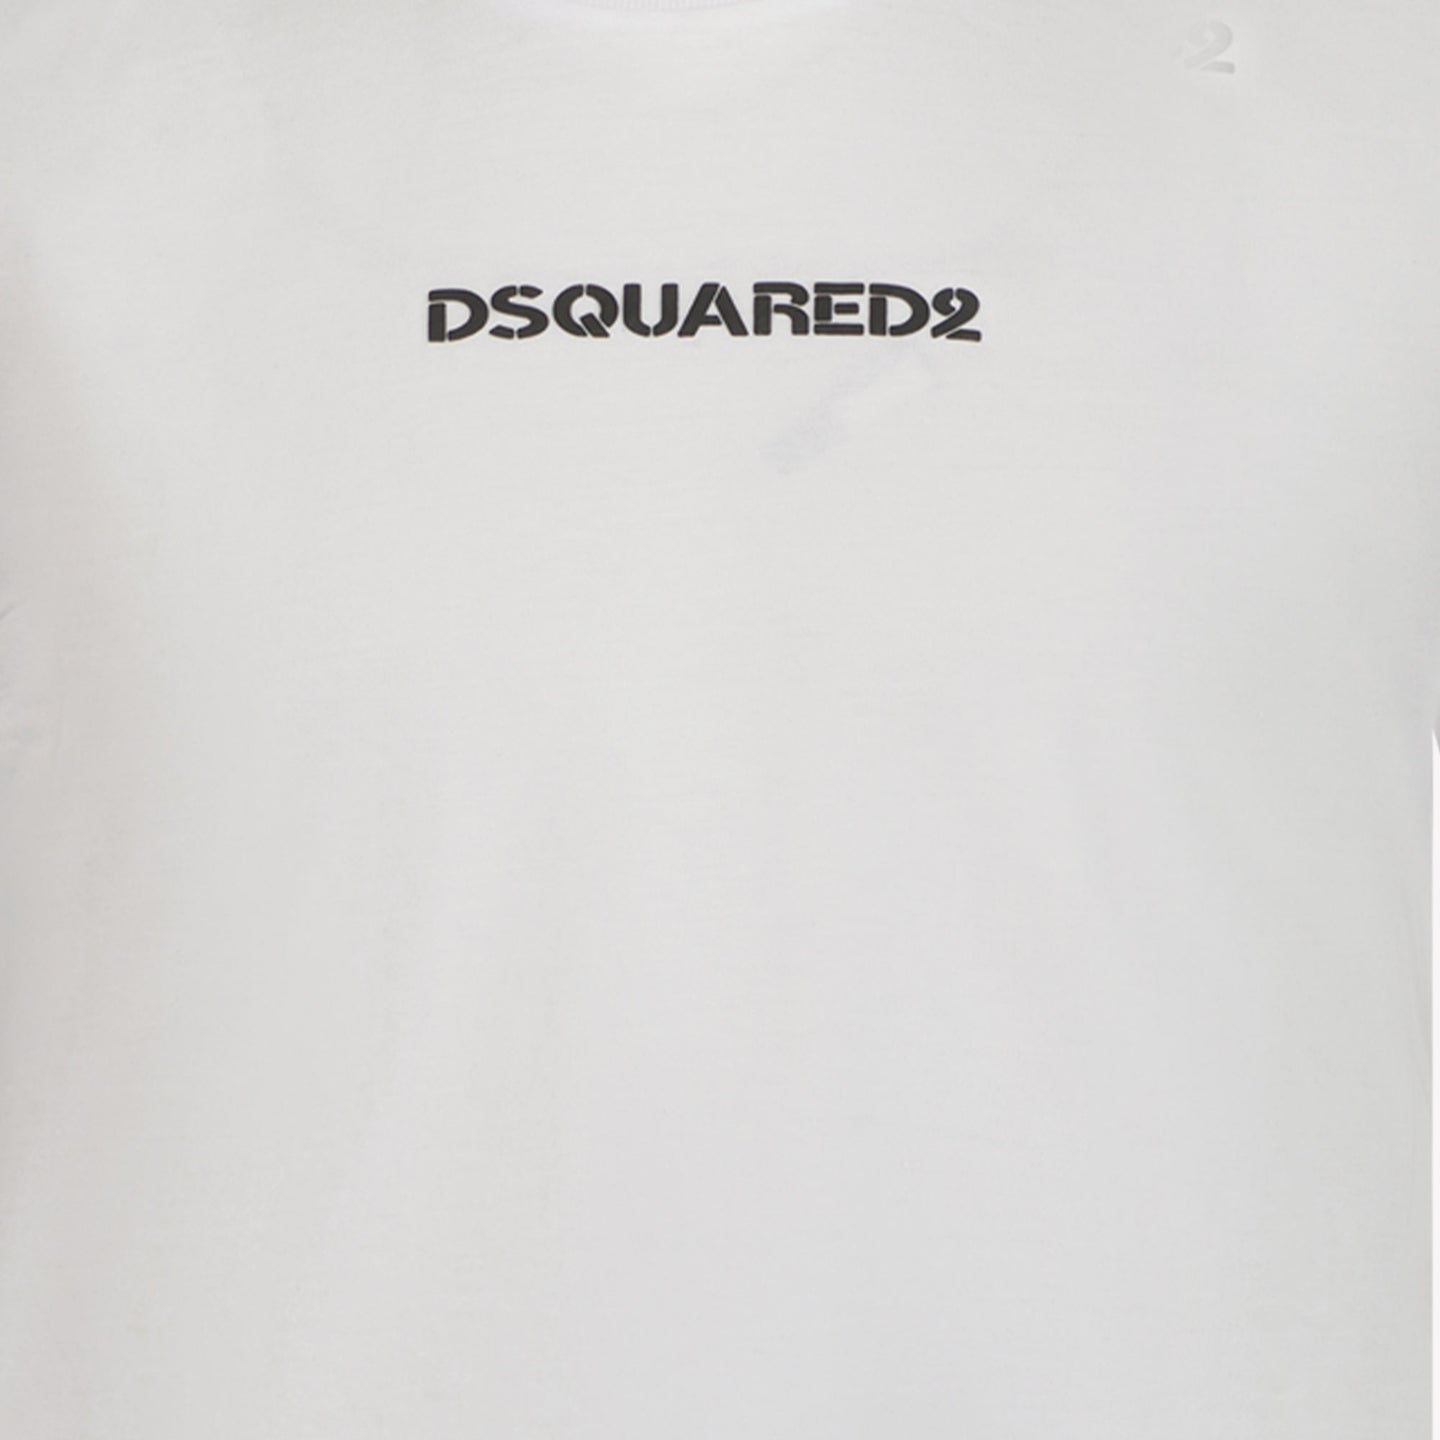 Dsquared2 T-shirt chłopców biały